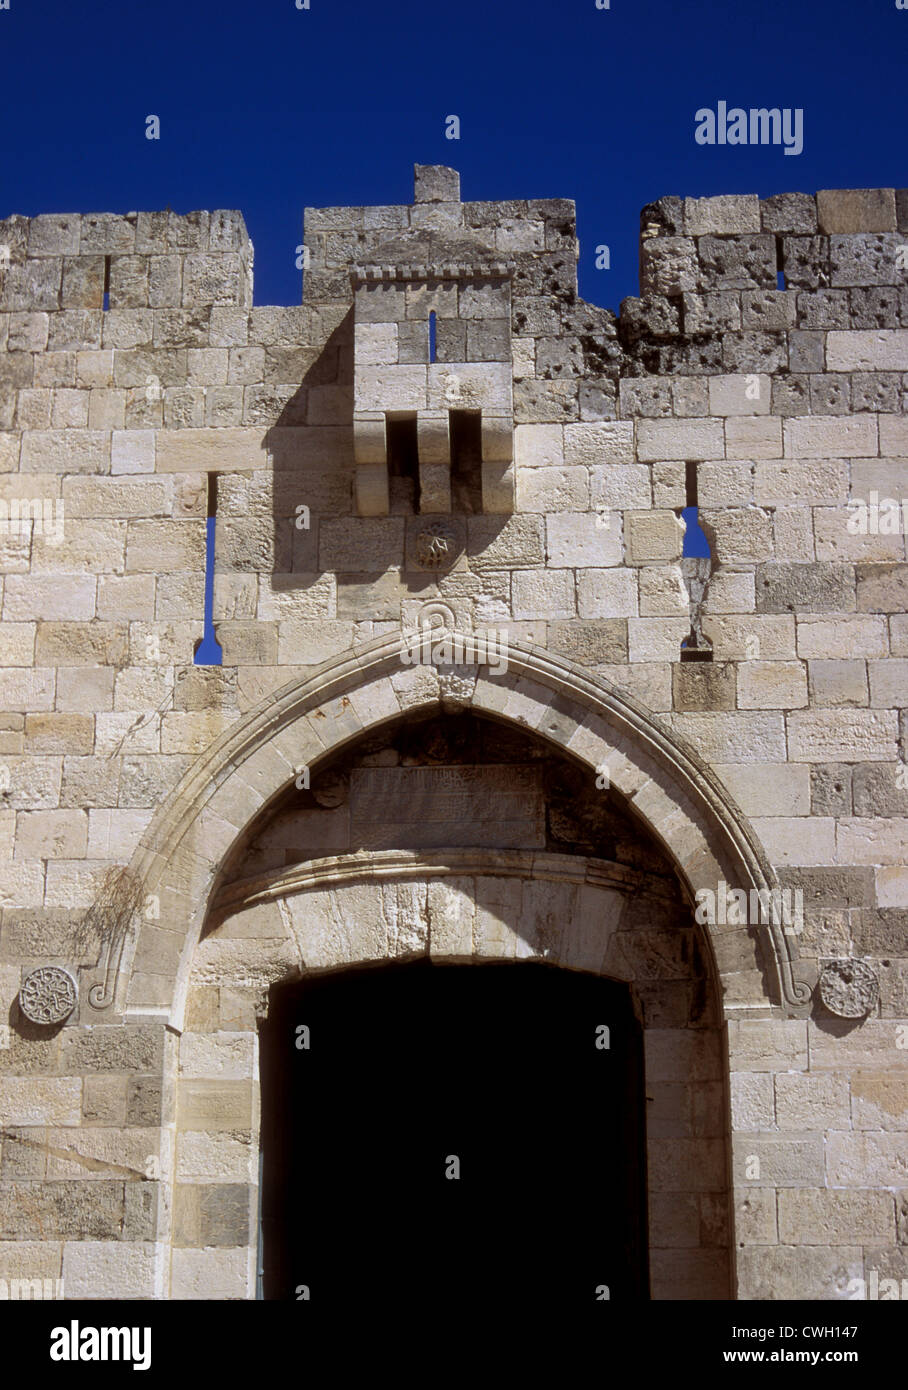 Jaffa Gate, Ottoman 16th century walls, Jerusalem Stock Photo